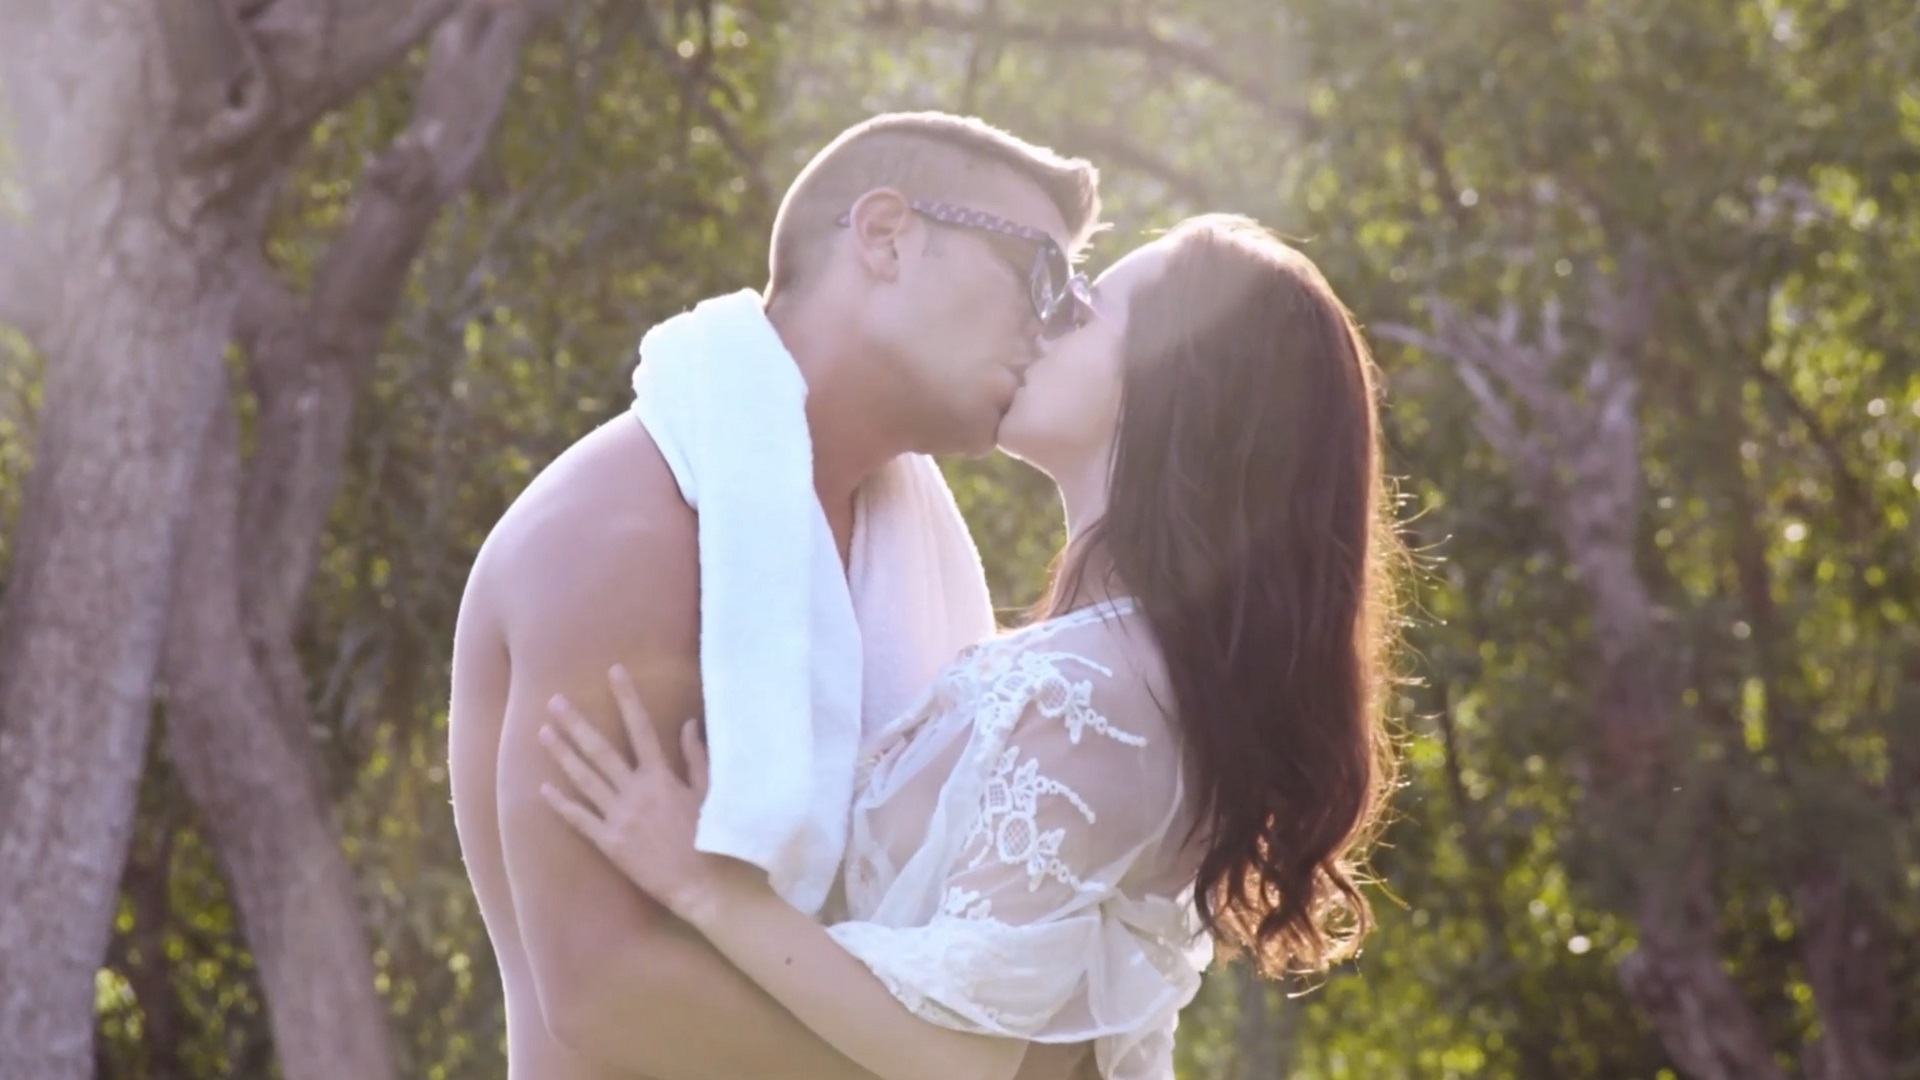 Видео про Русское эротика муж и жена с розговором ▶️ Лучшие XxX-ролики